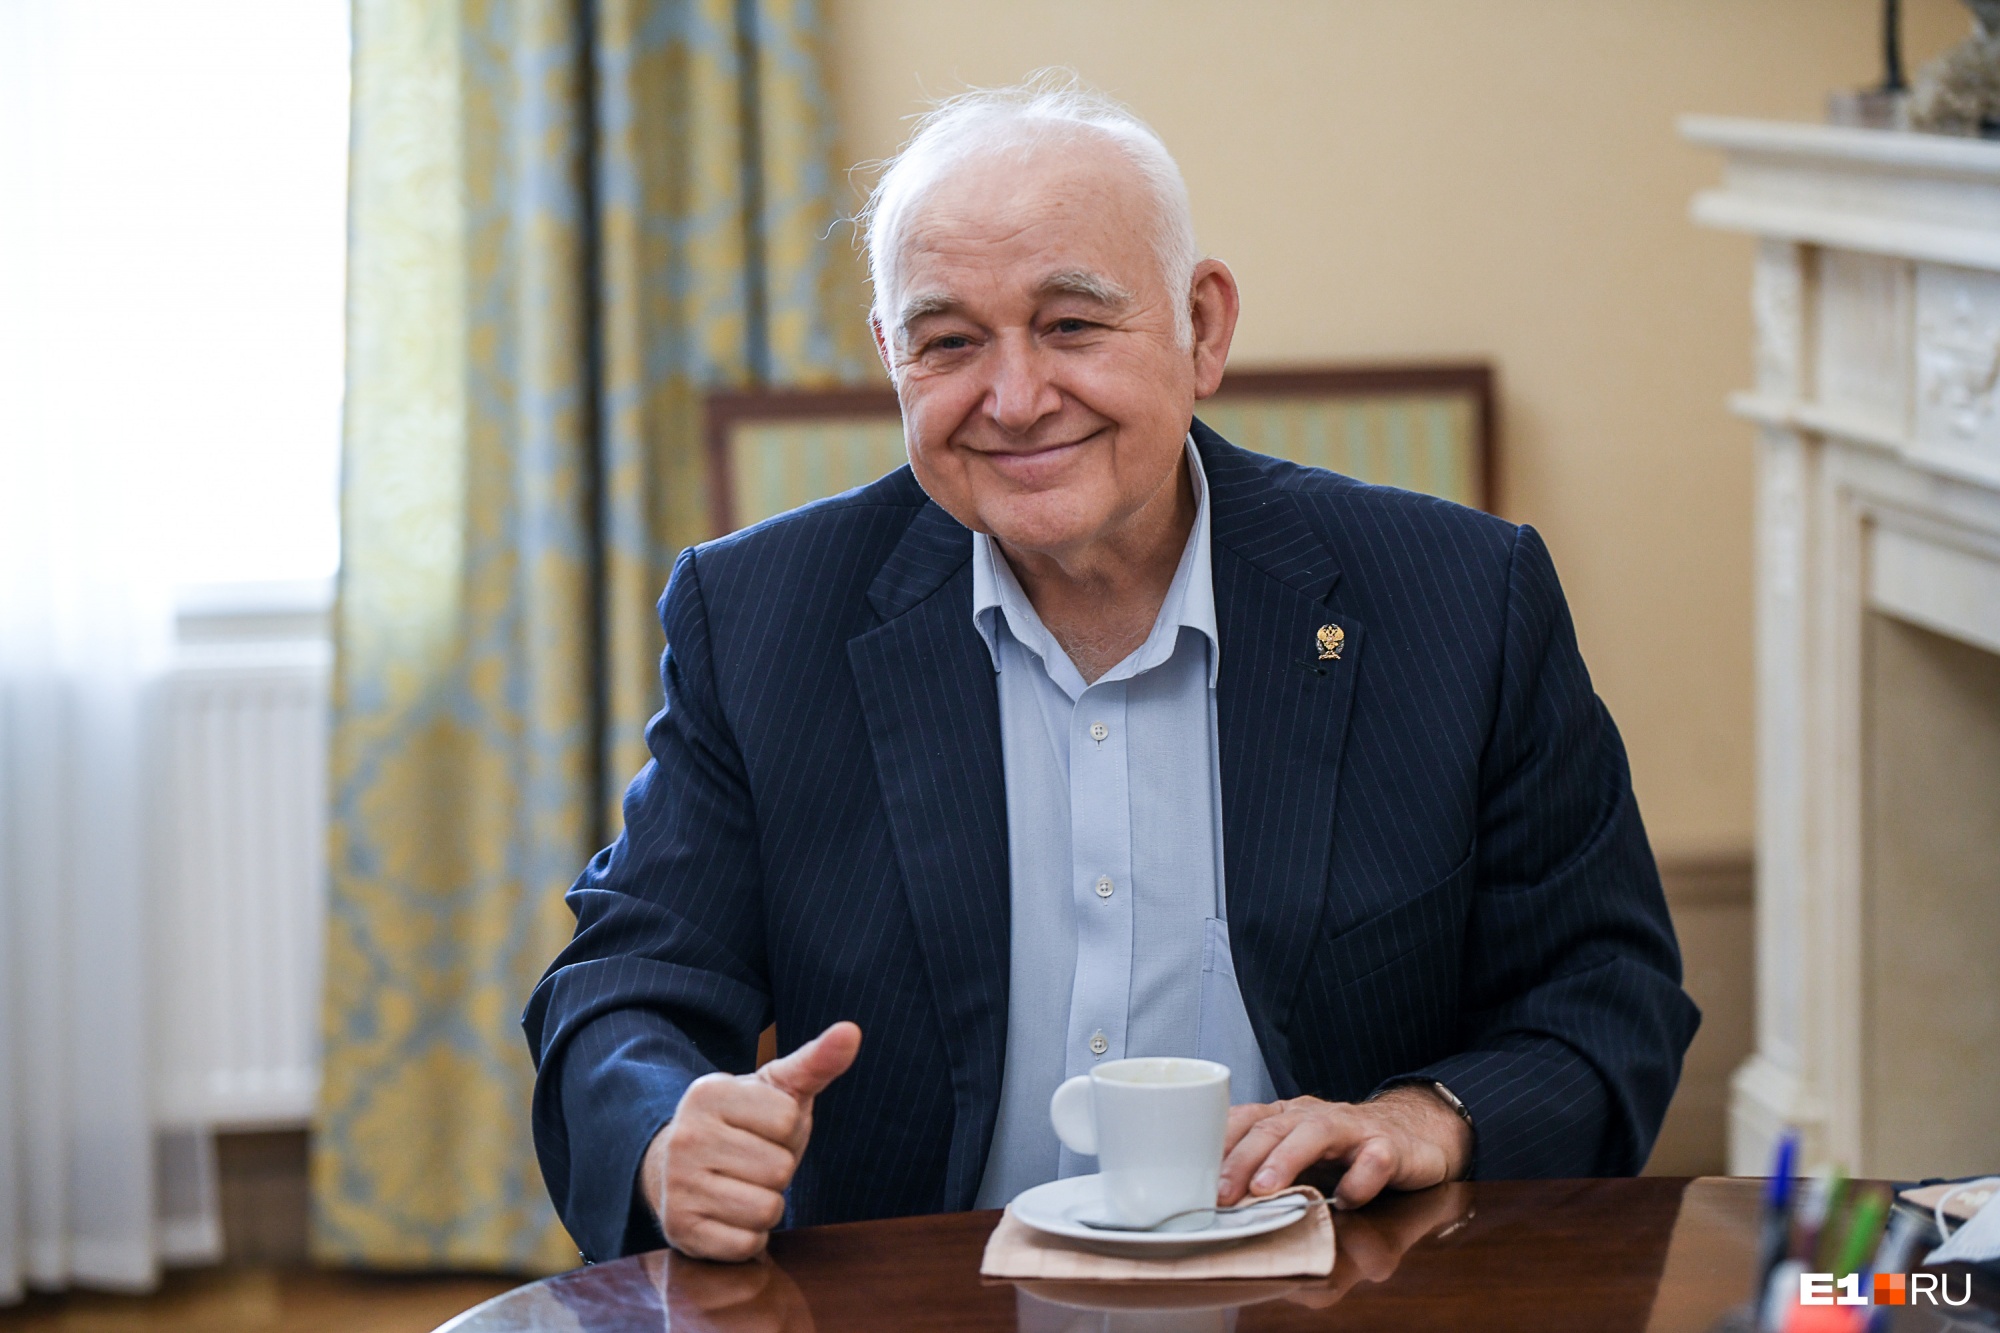 Александр Колотурский работает директором Свердловской филармонии с 1989 года